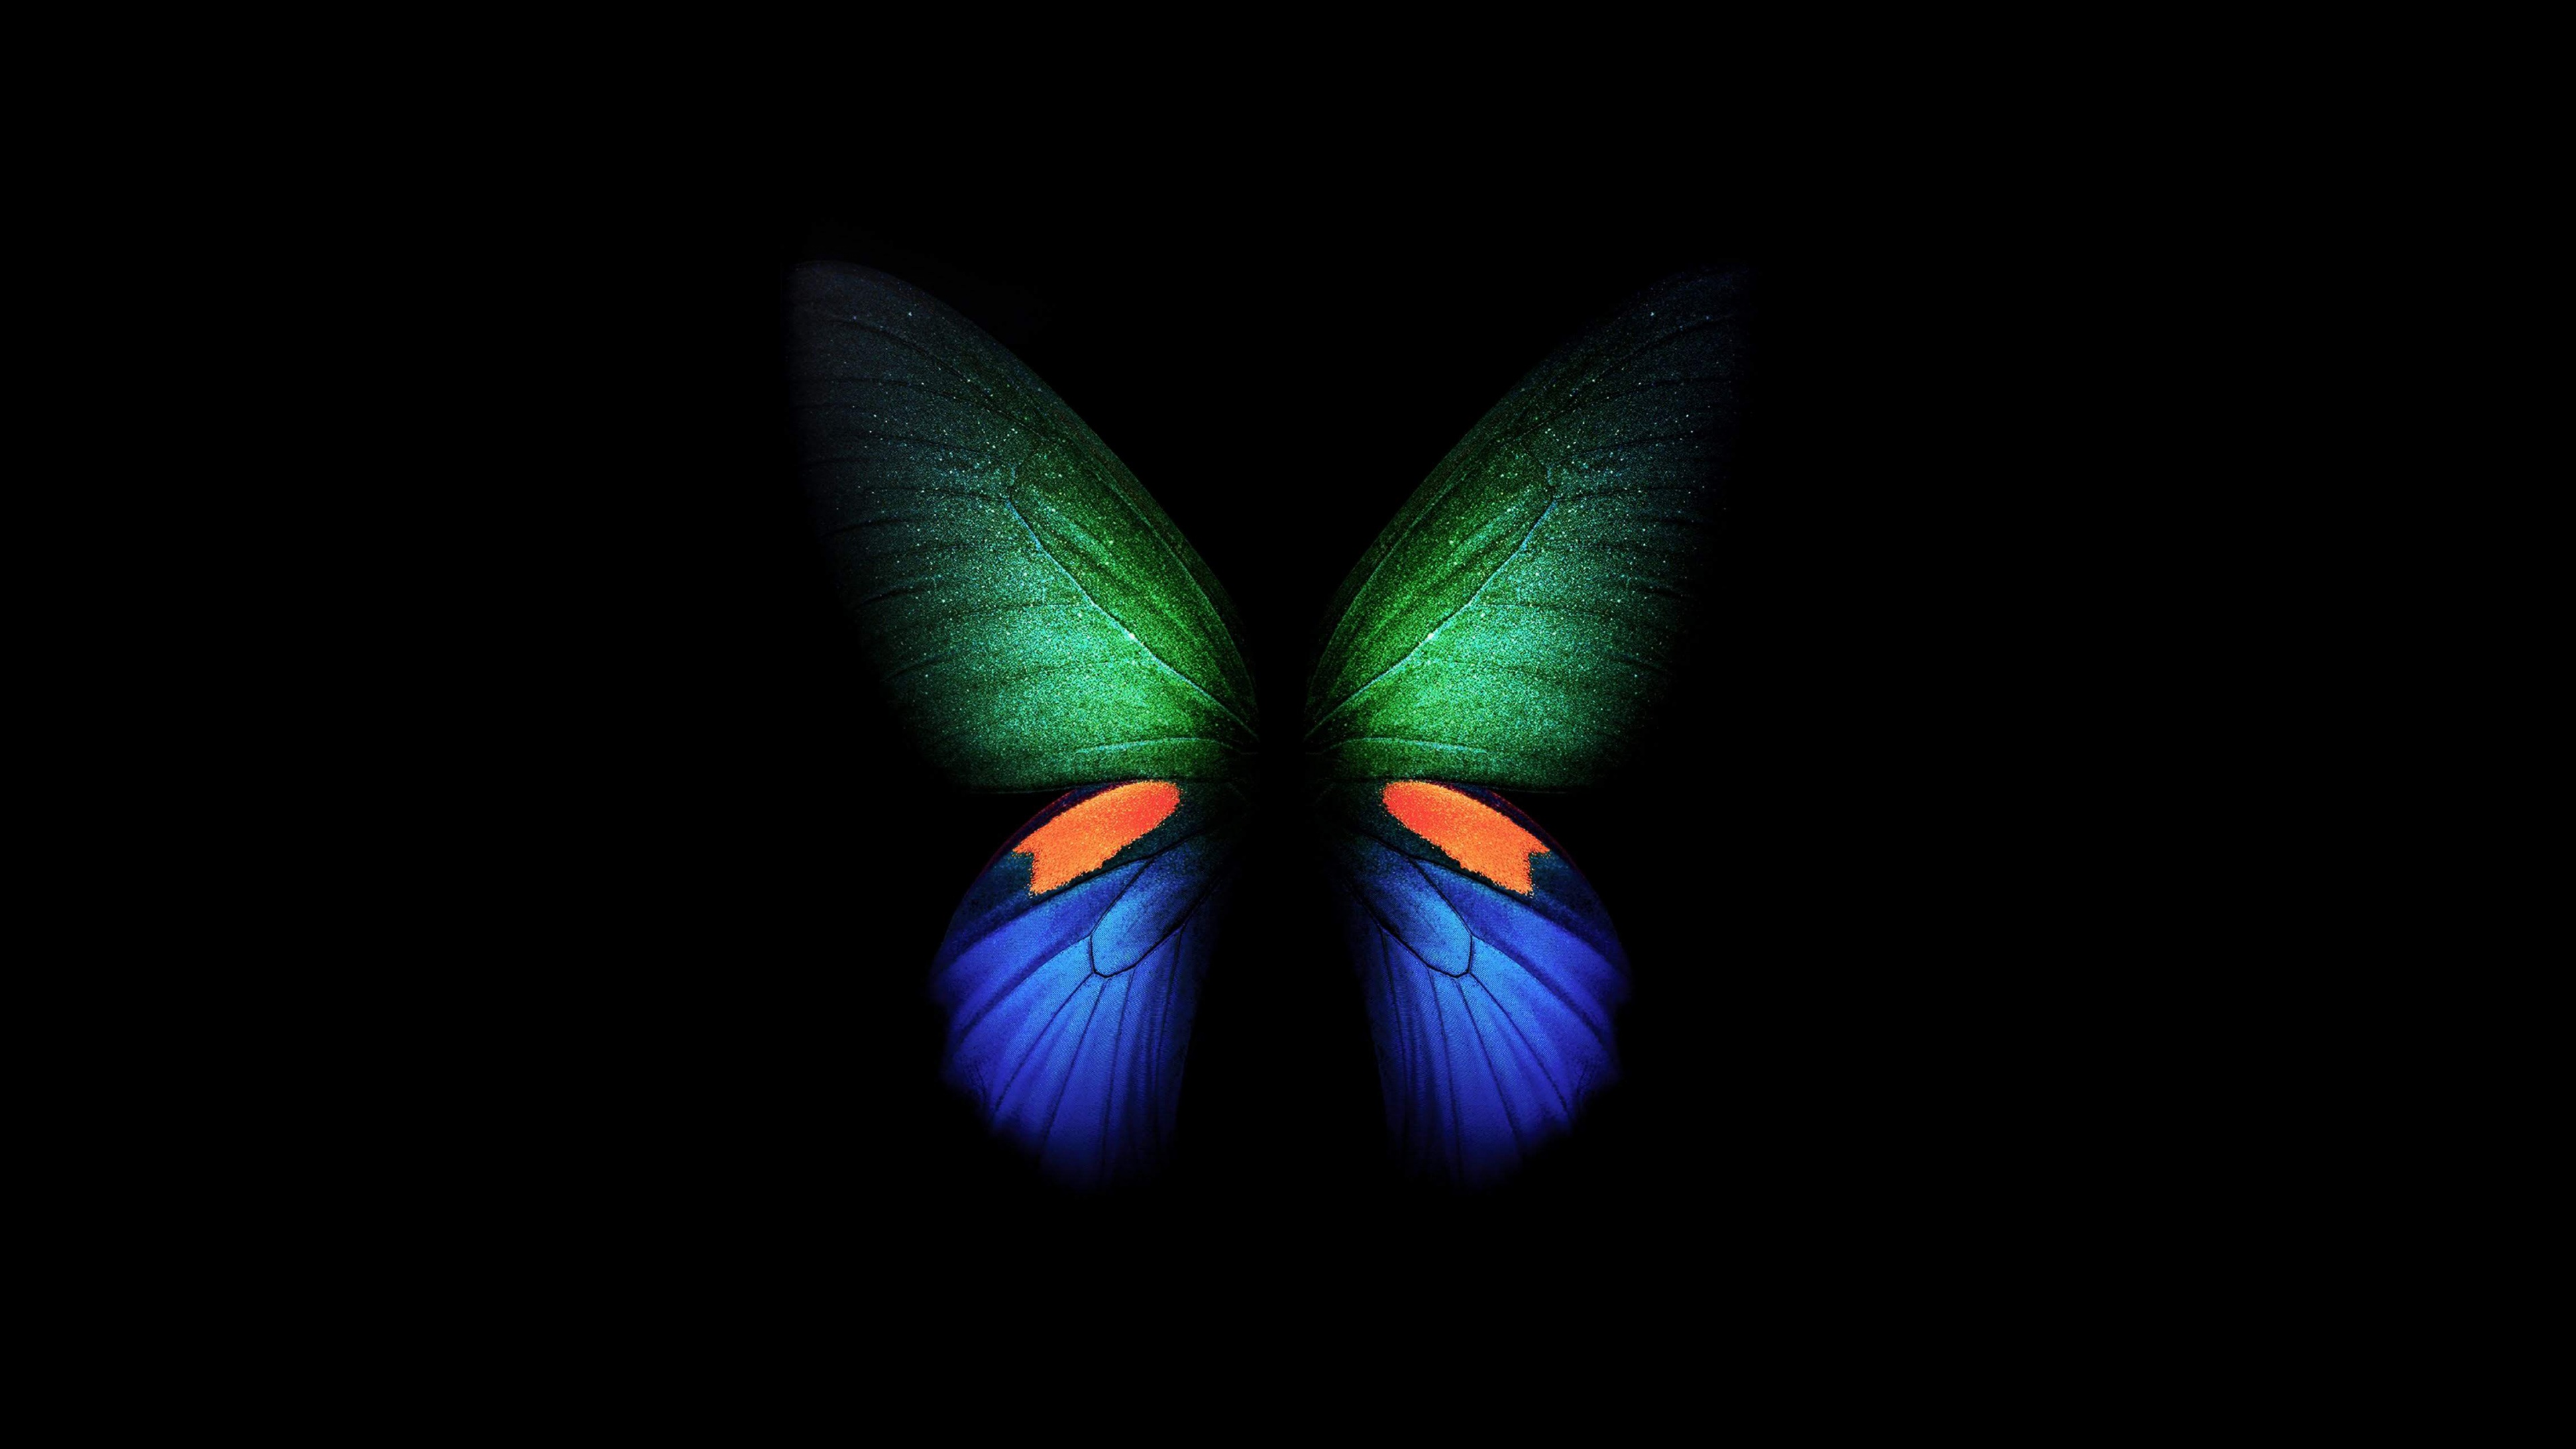 Khám phá hình nền bướm 4K đầy màu sắc trên Samsung Galaxy Fold phiên bản Đen và Tối #